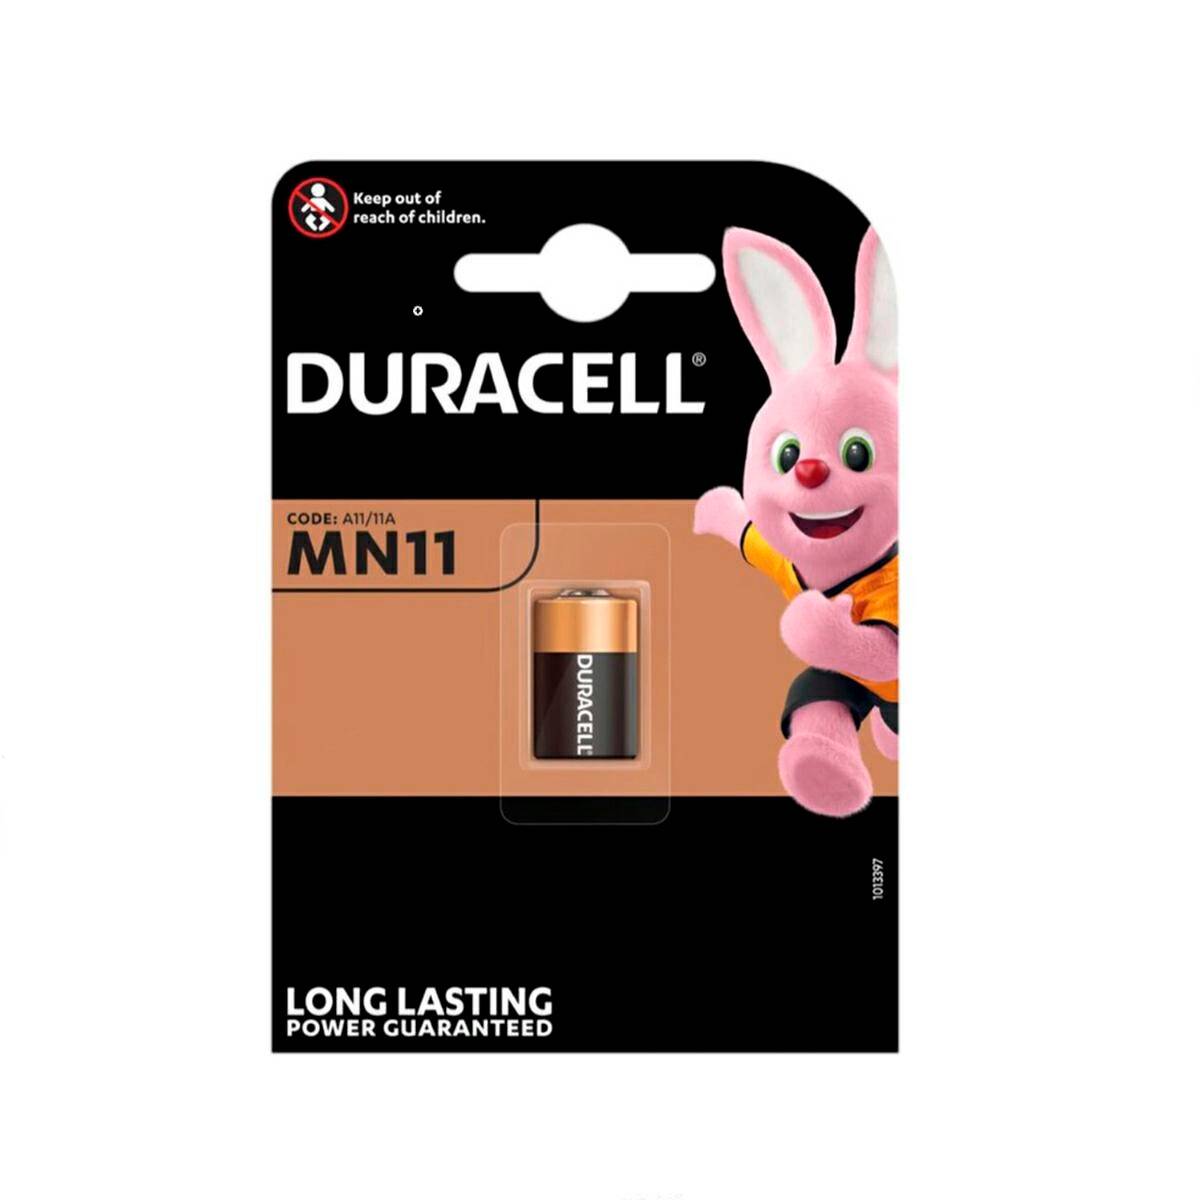 Batterie Duracell A11 MN11 6V 1stck